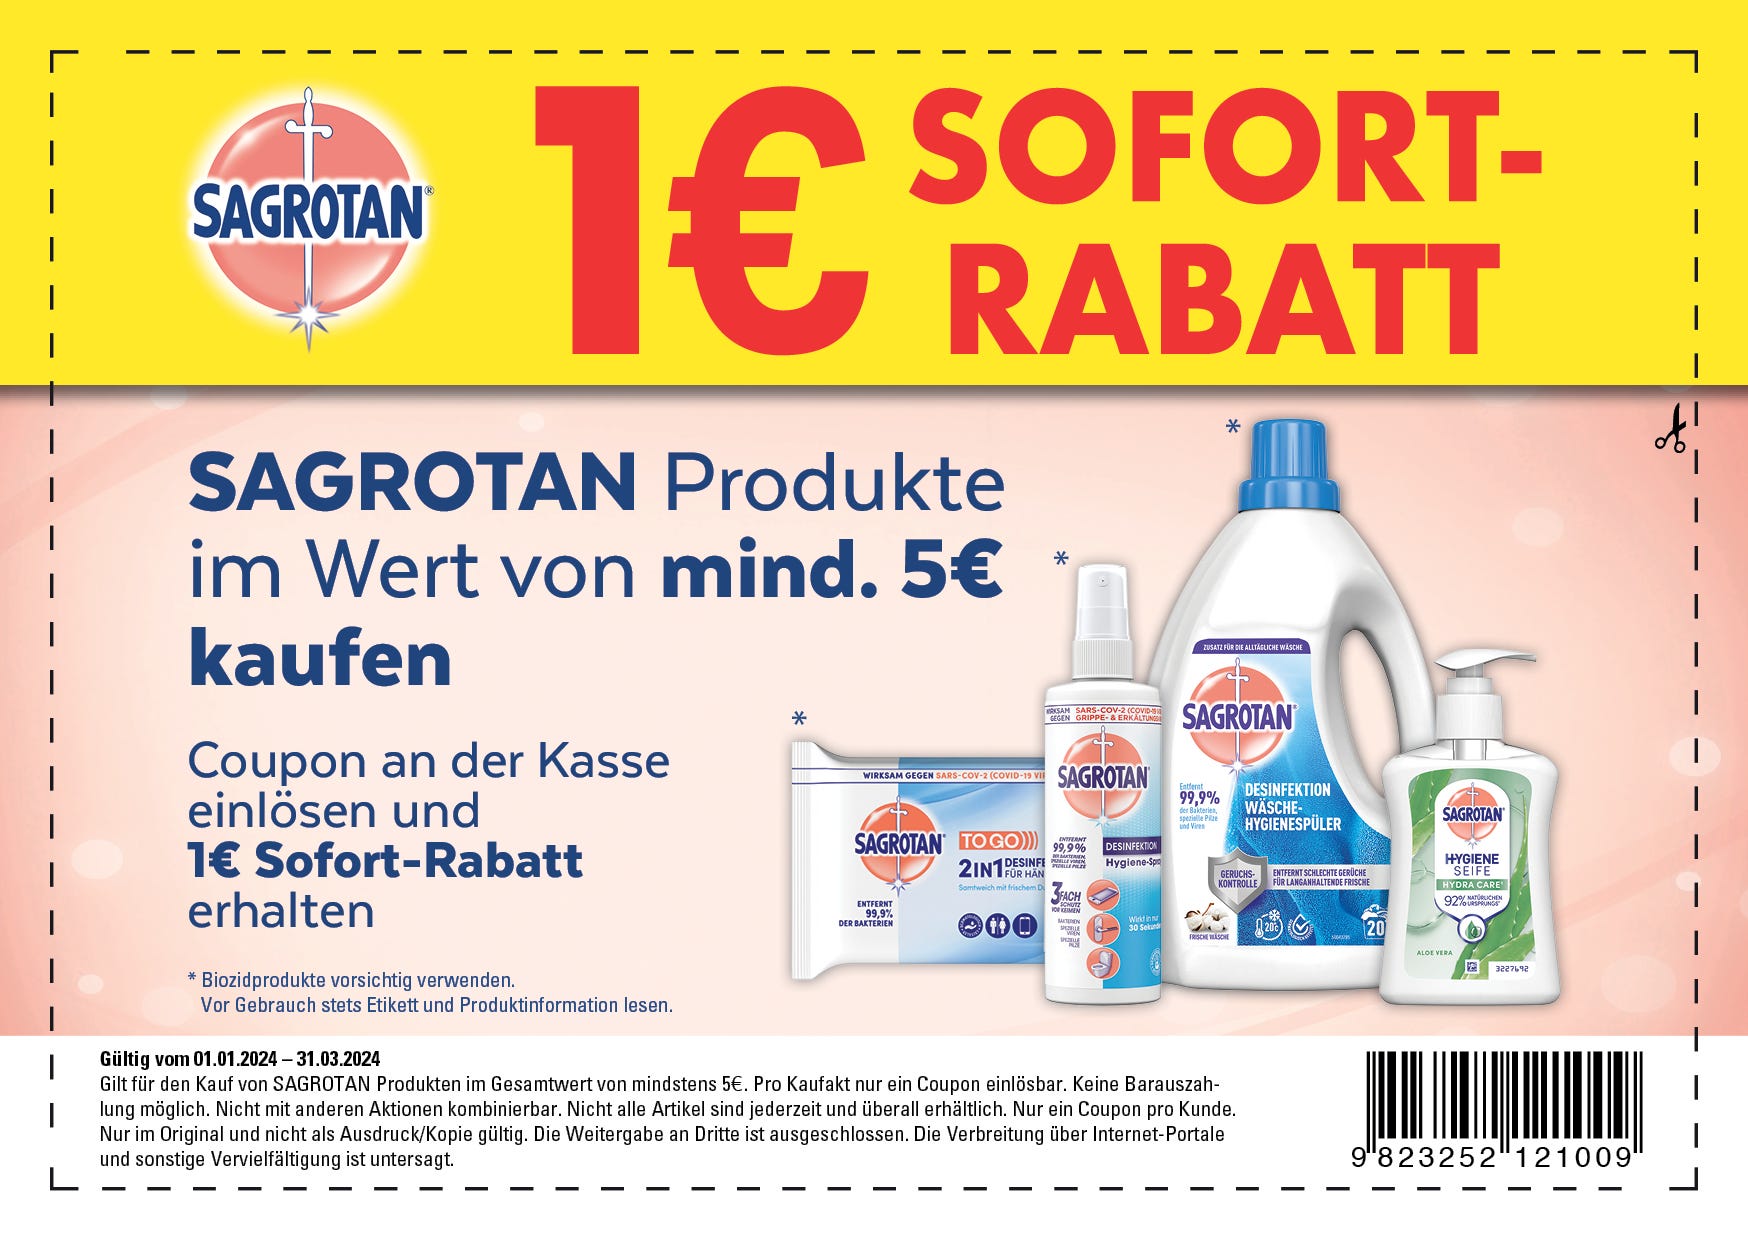 Sagrotan Coupon 2024 1€ Sofort-Rabatt. Klicken Sie auf das Bild um den PDF Coupon herunterzuladen.